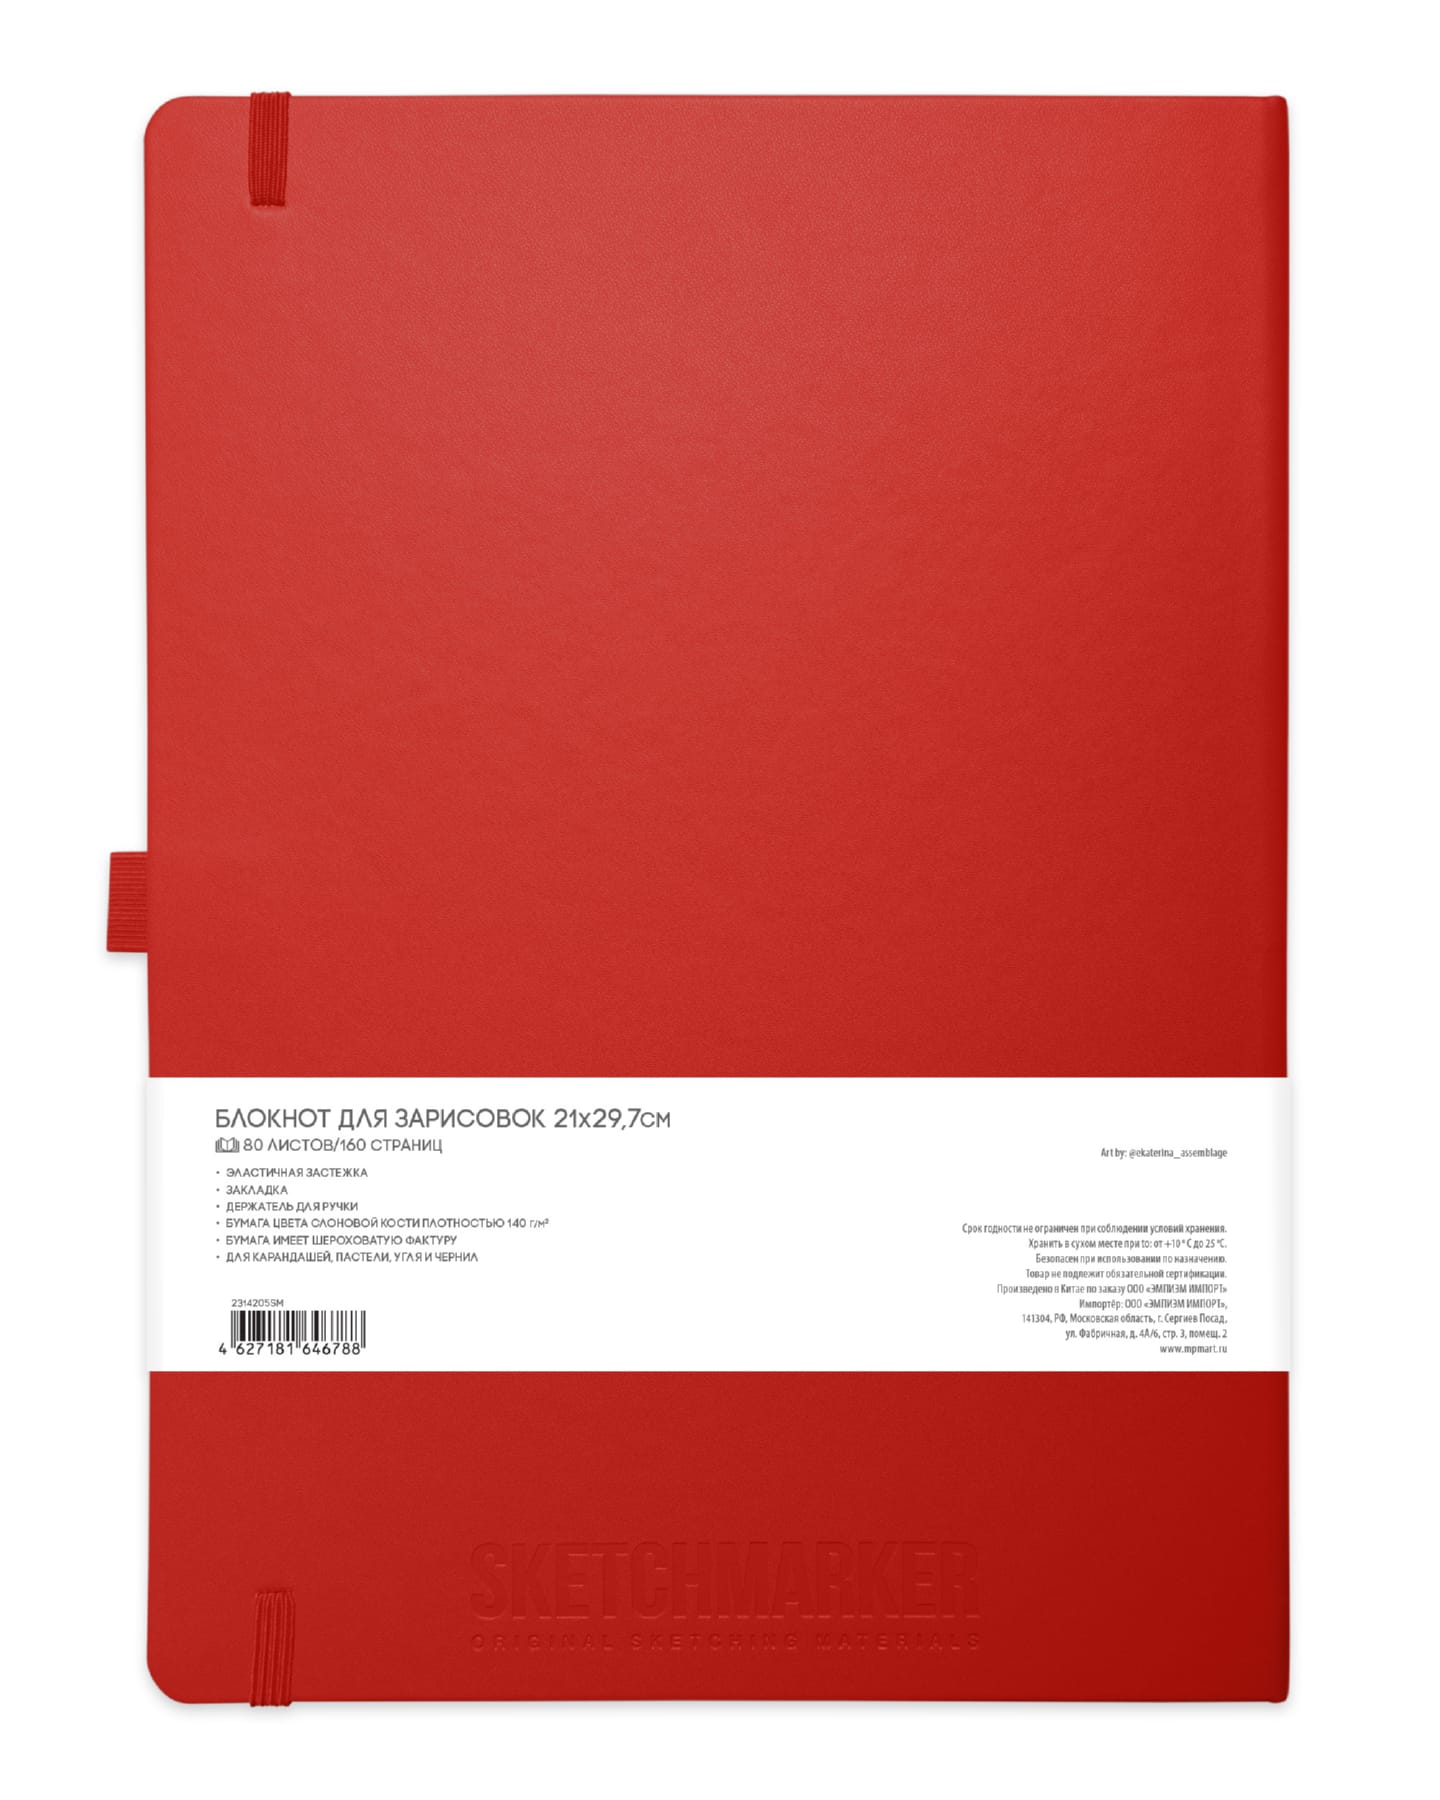 Блокнот для зарисовок Sketchmarker 140г/кв.м 21*29.7см 80л твердая обложка Красный